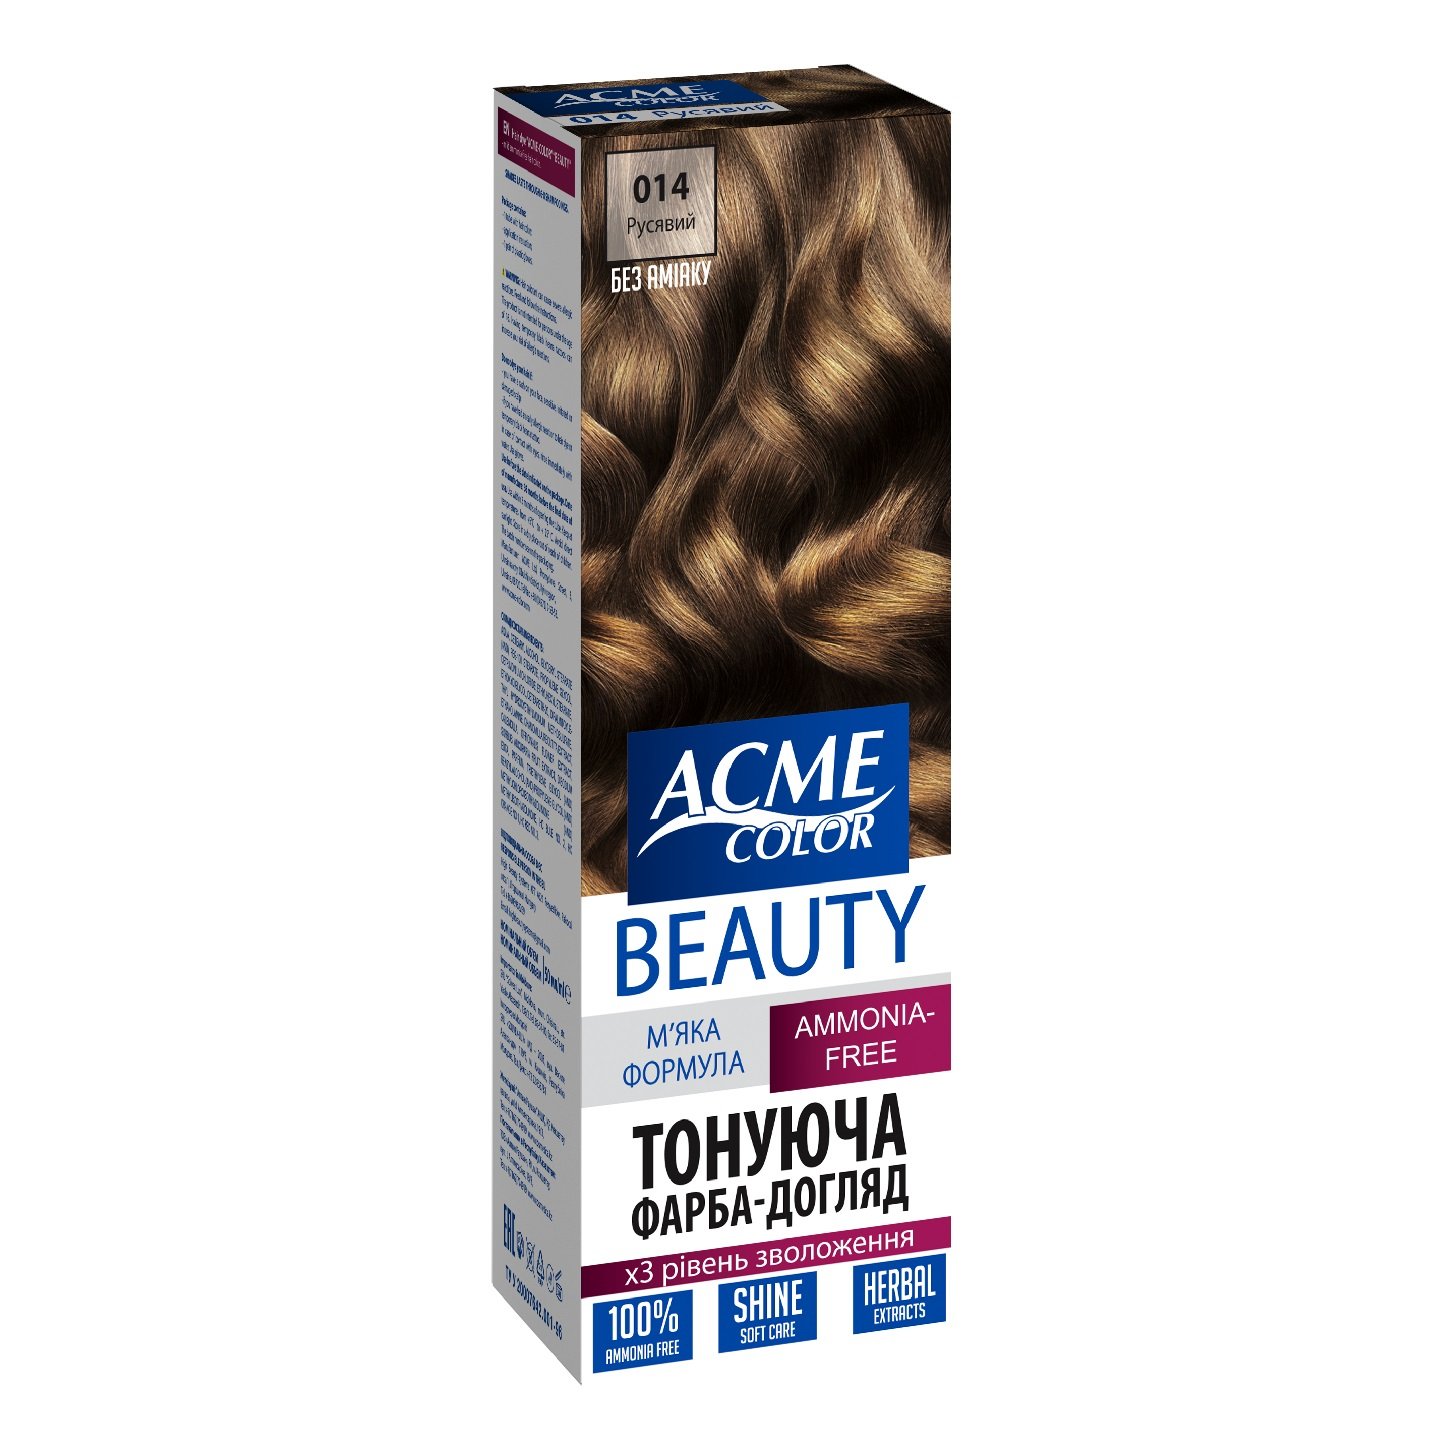 Гель-краска для волос Acme-color Beauty, оттенок 014 (Русый), 69 г - фото 1